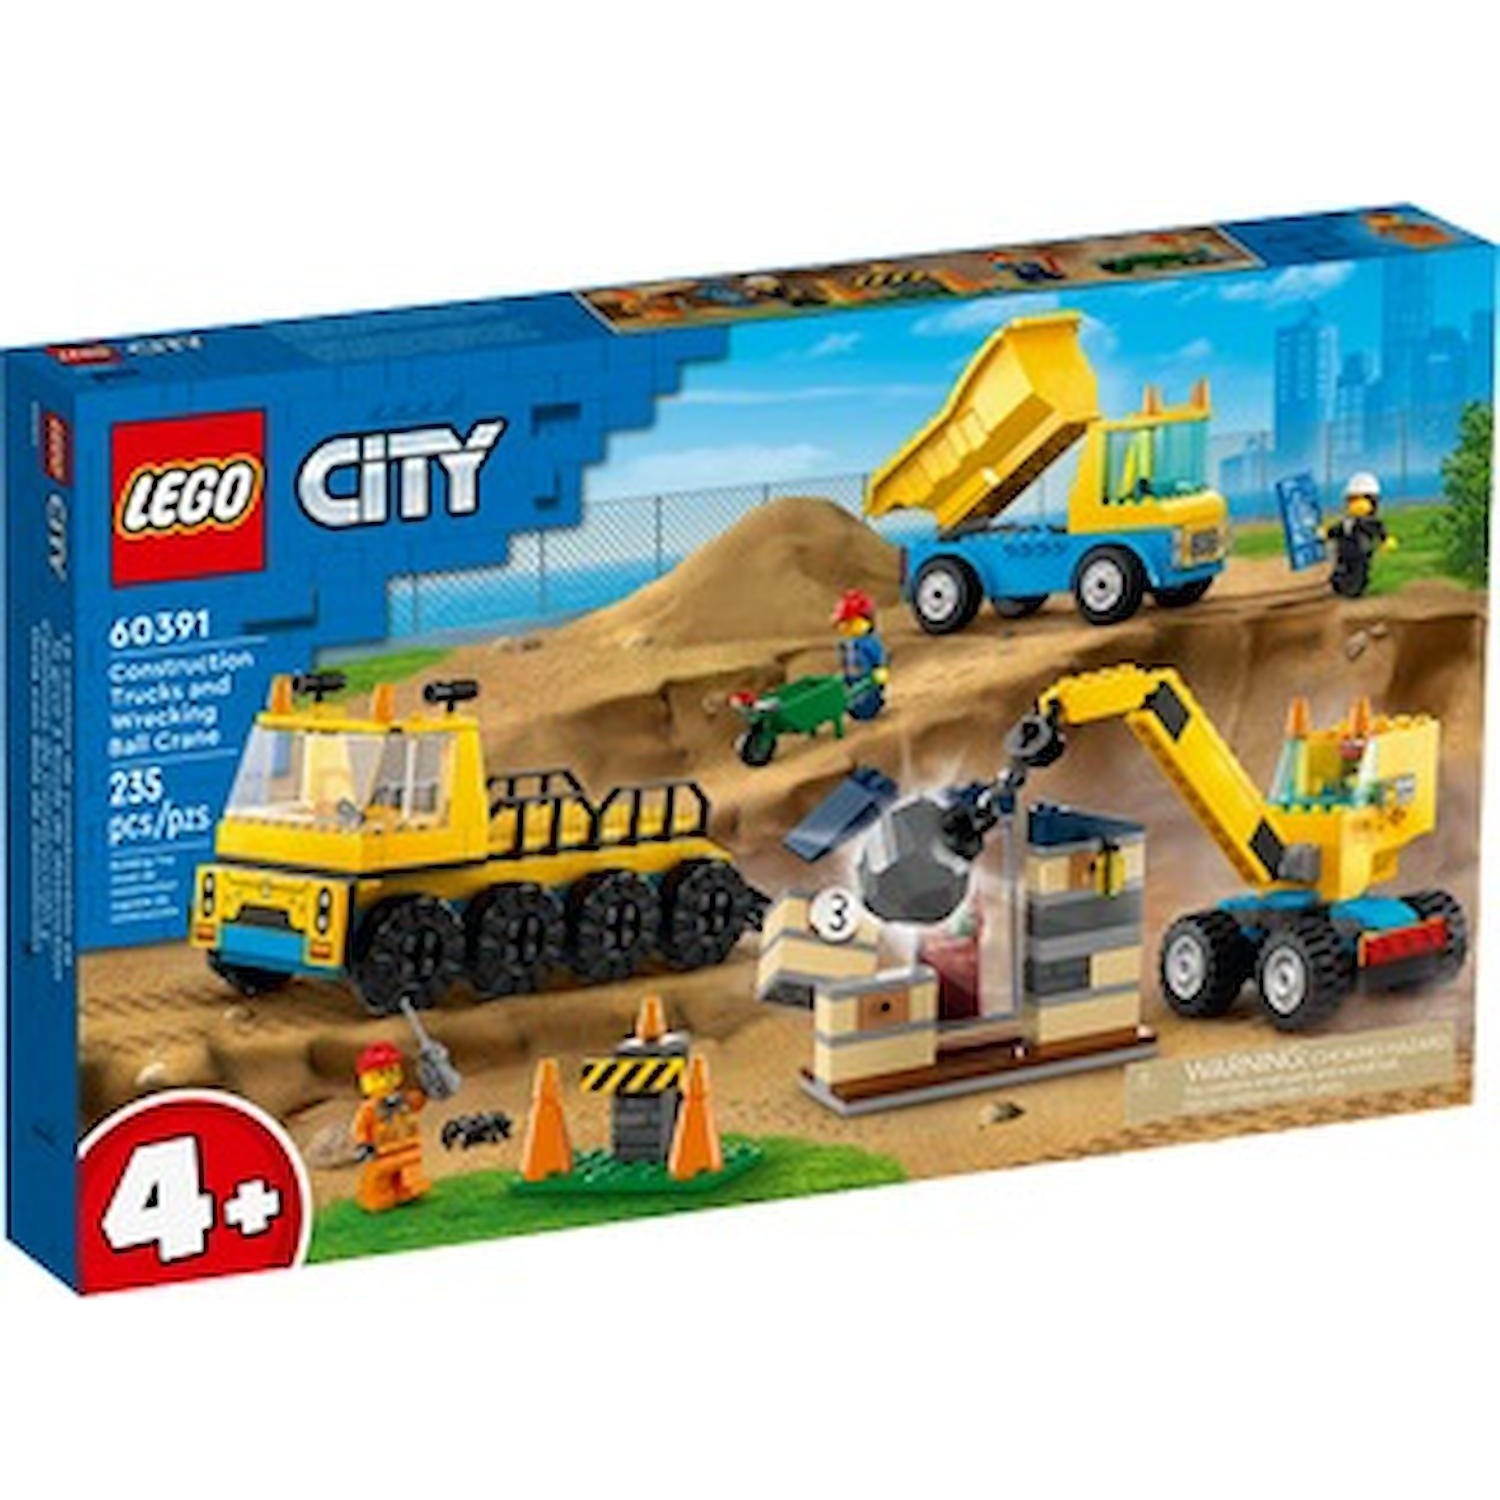 Immagine per Lego City Camion da cantiere con palla da demolizione da DIMOStore